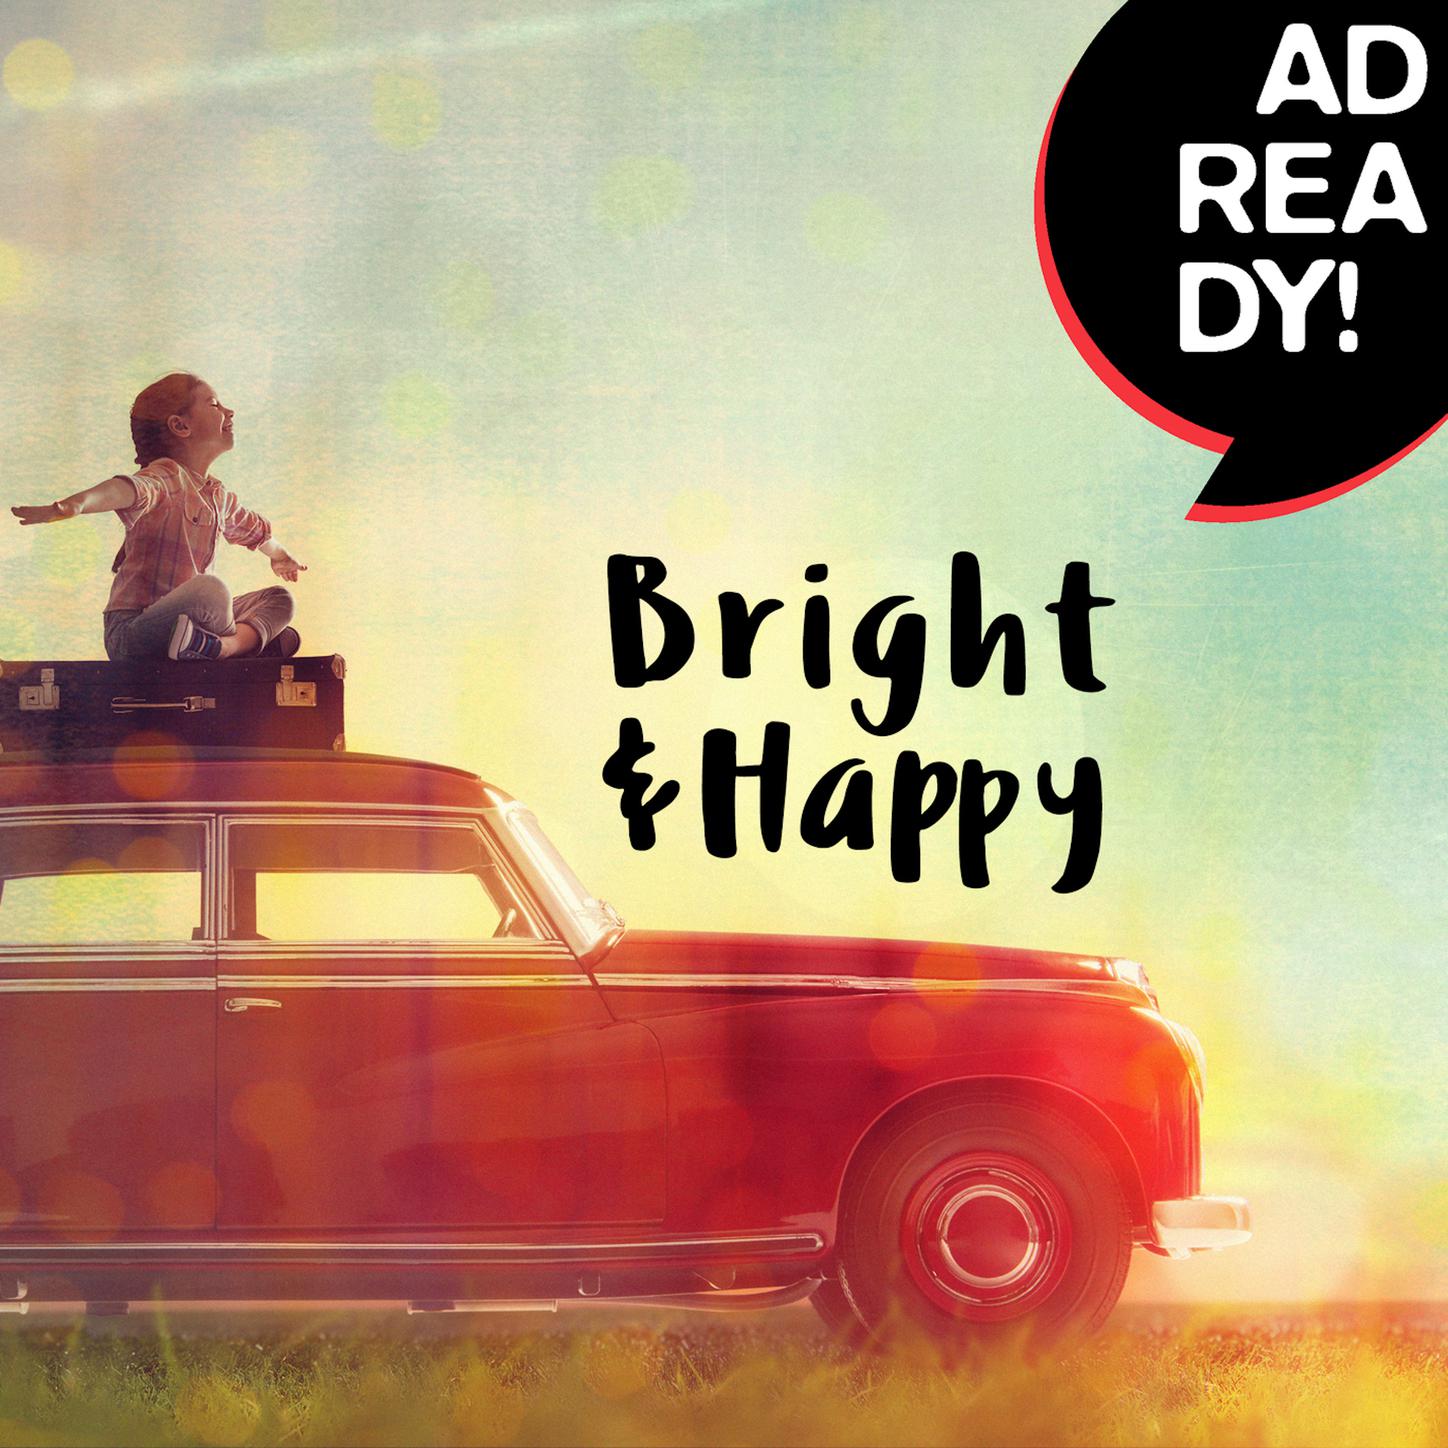 Bright & Happy (Ad Ready!)